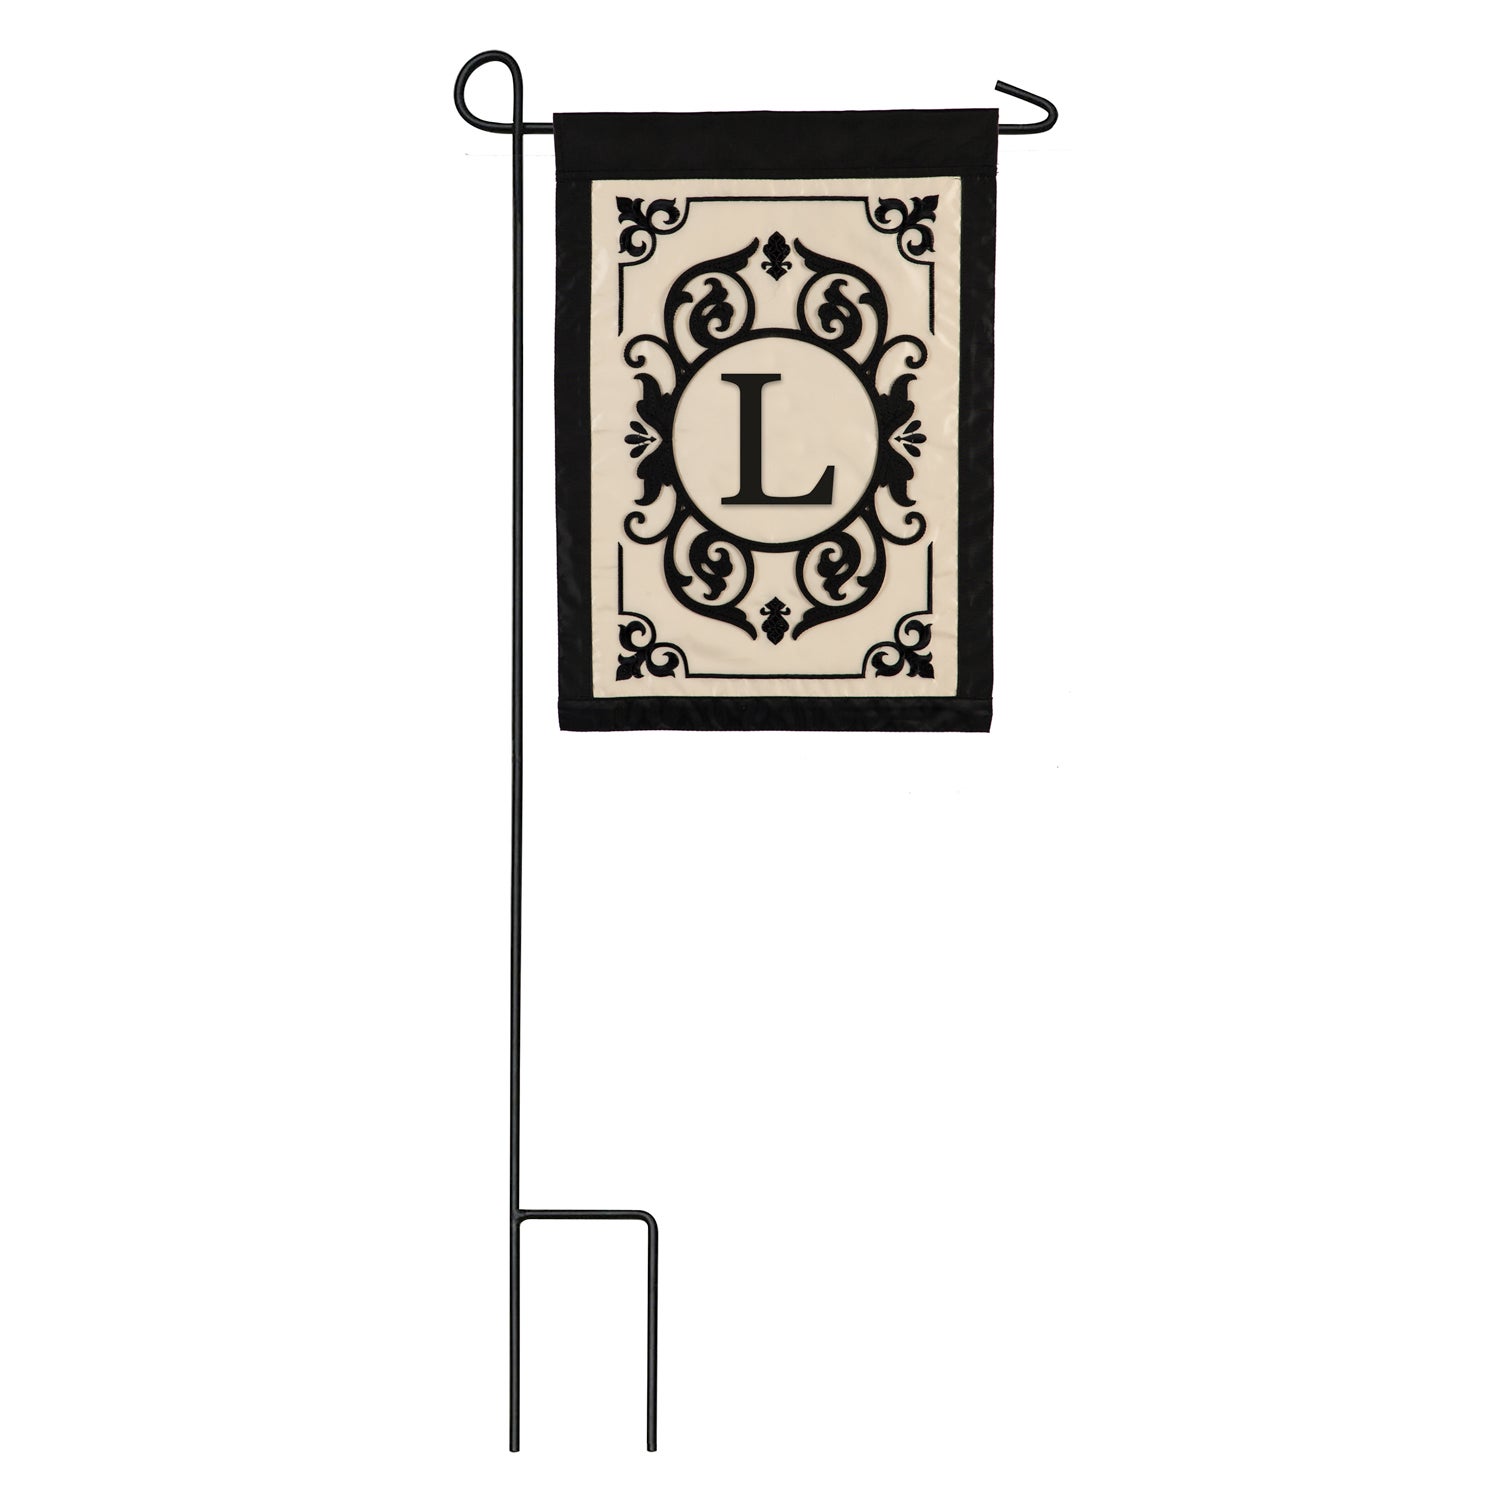 Cambridge Monogram Garden Applique Flag, Letter L